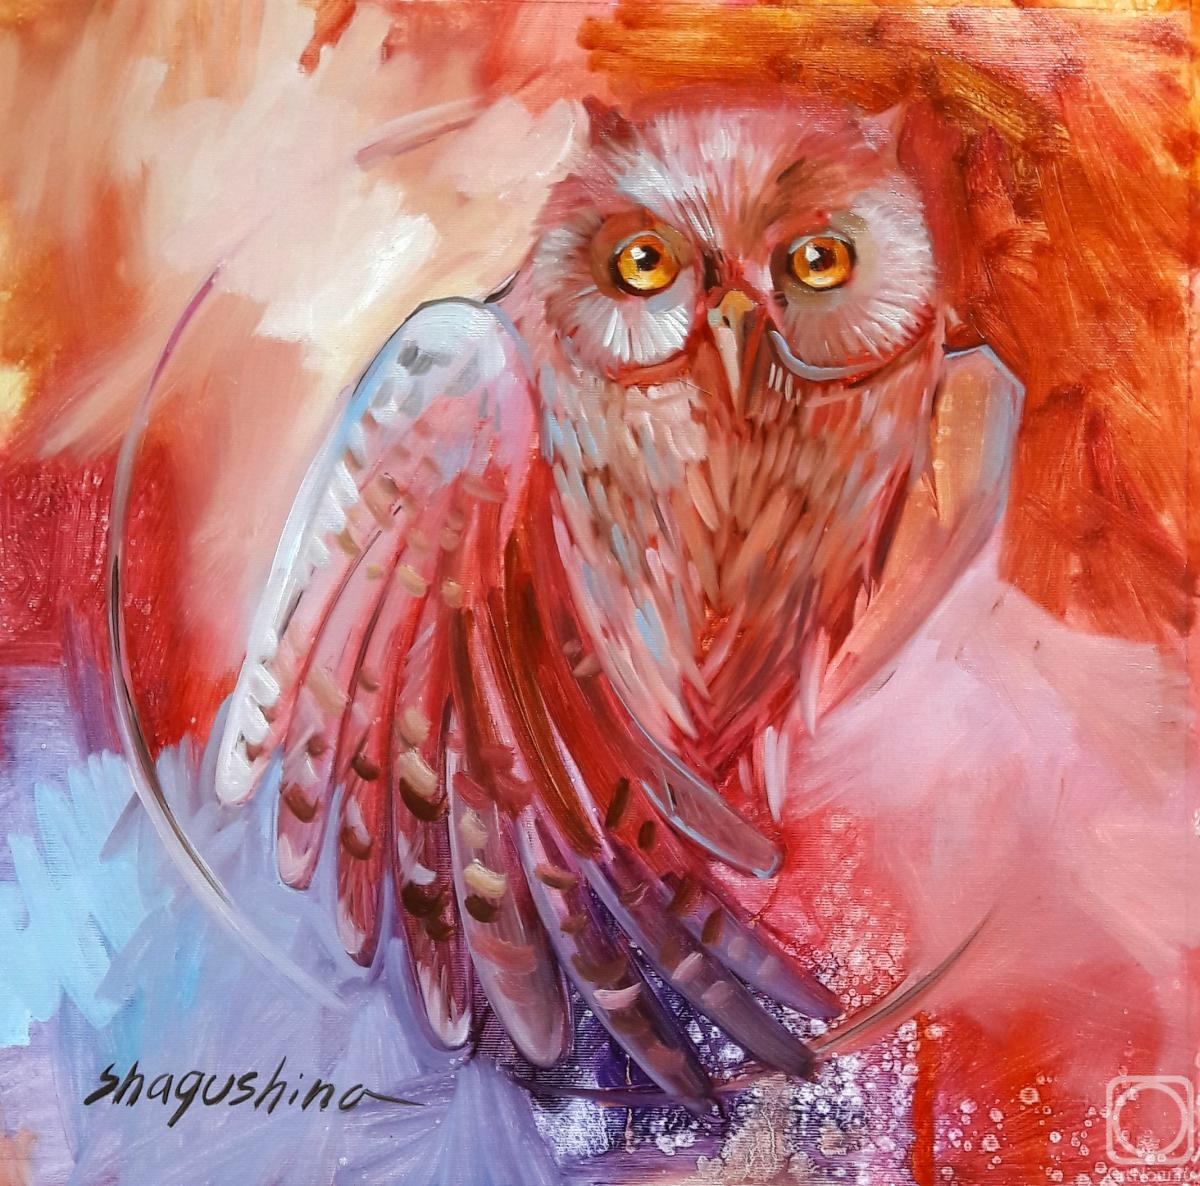 Shagushina Olga. Totem Owl Lily. Wake up your totem